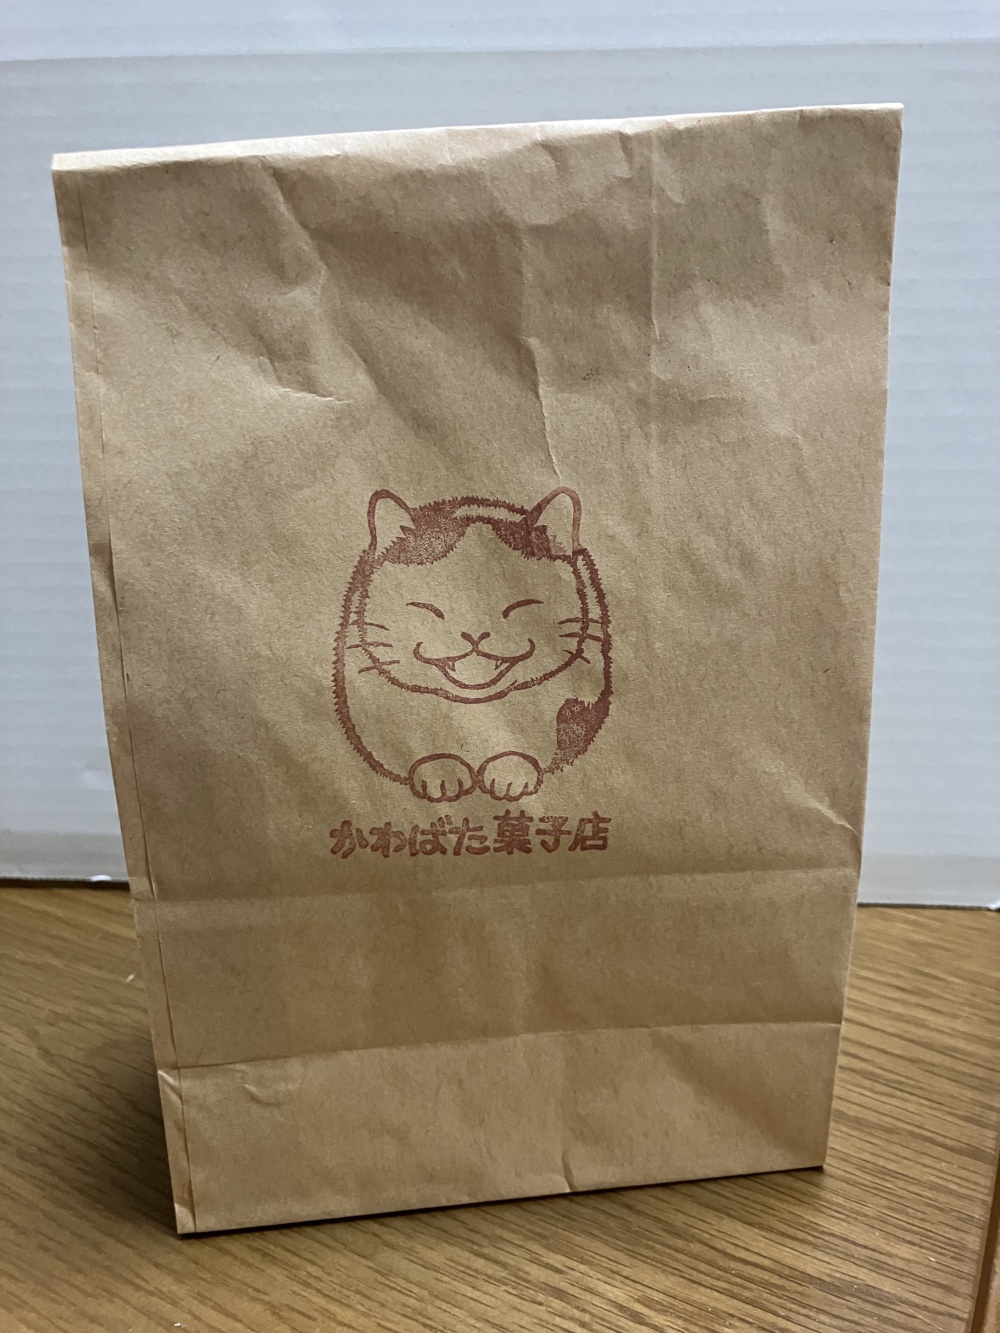 かわばた菓子店の紙袋